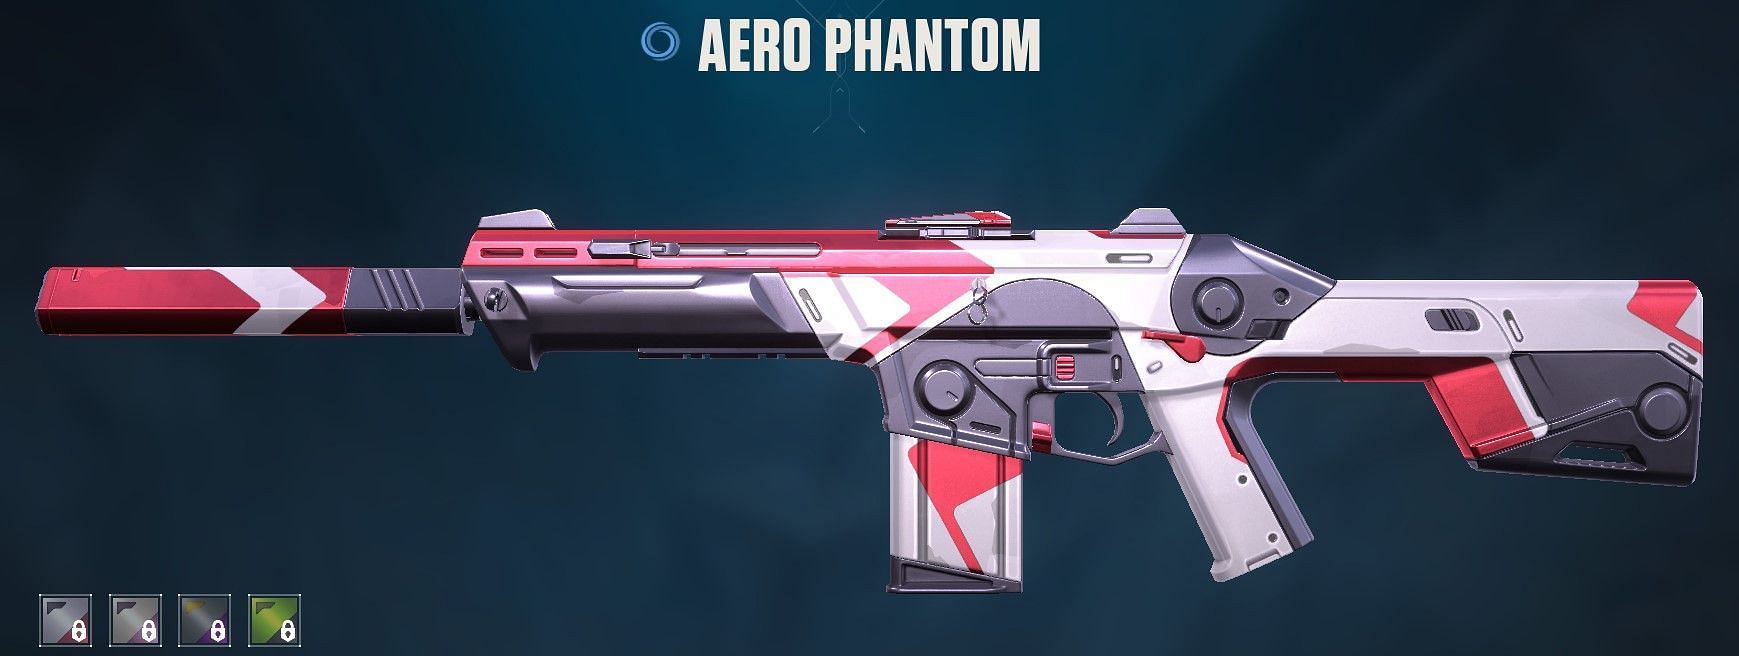 Aero Phantom (Image via Riot Games)